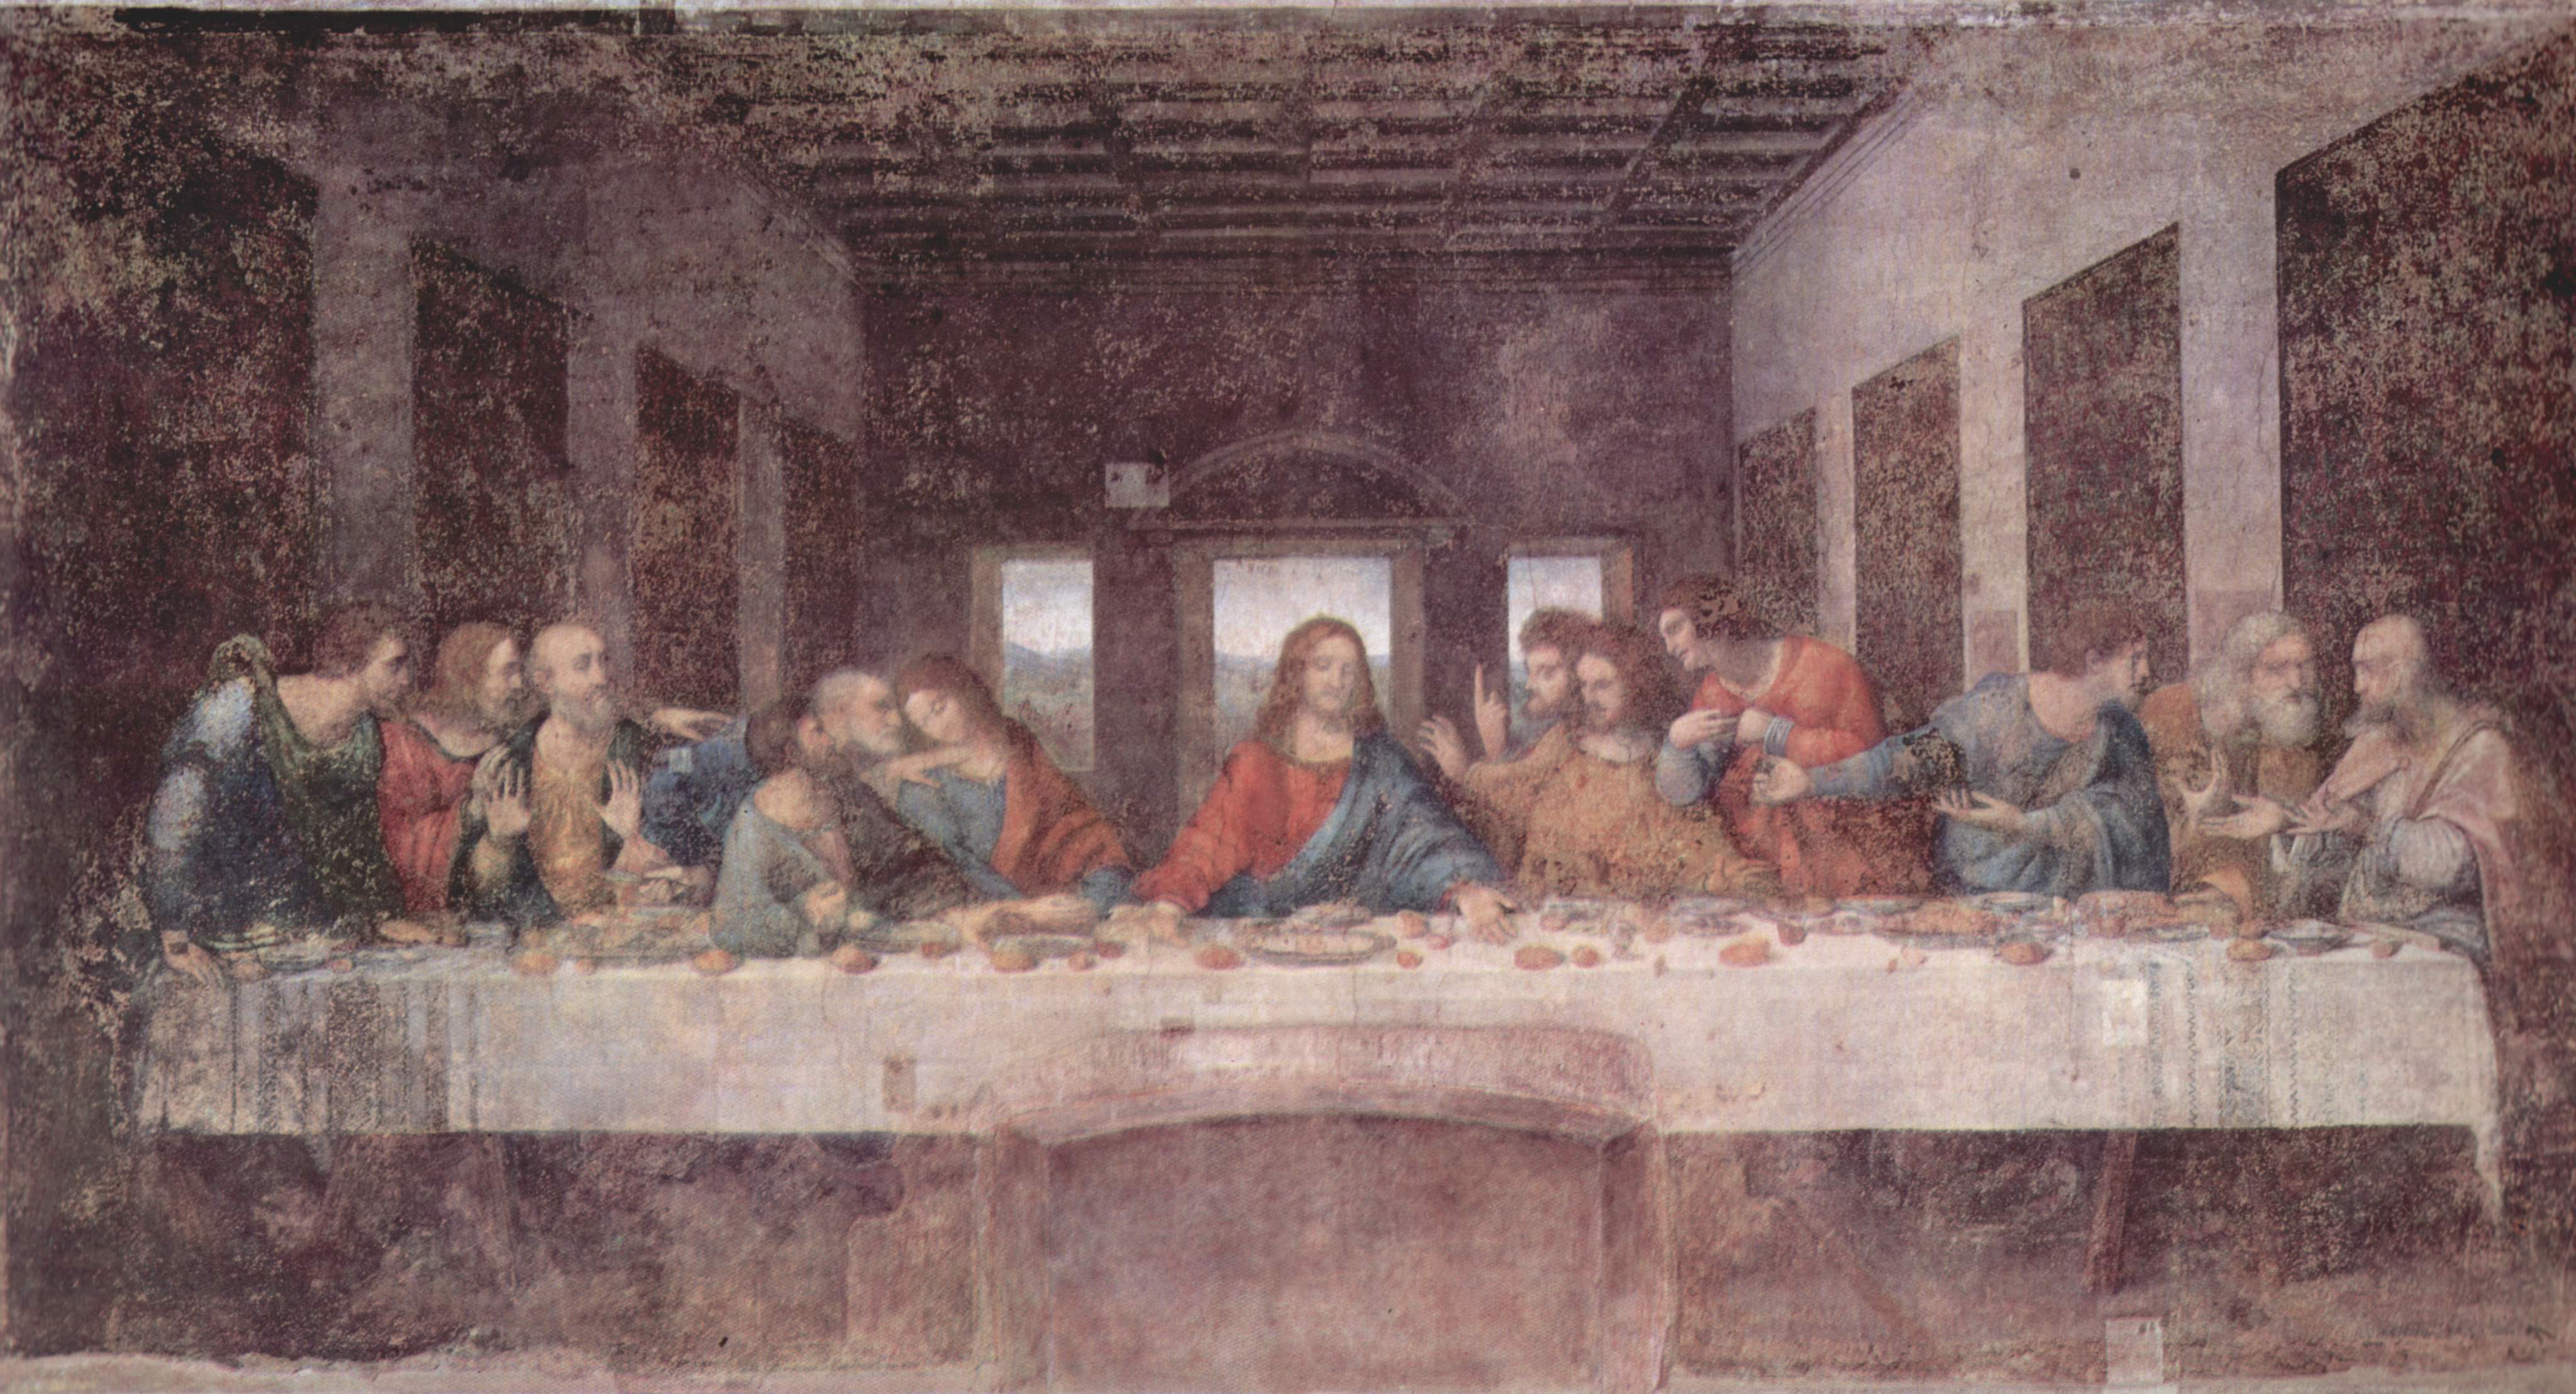 1. "The Last Supper" by Leonardo da Vinci - wide 4